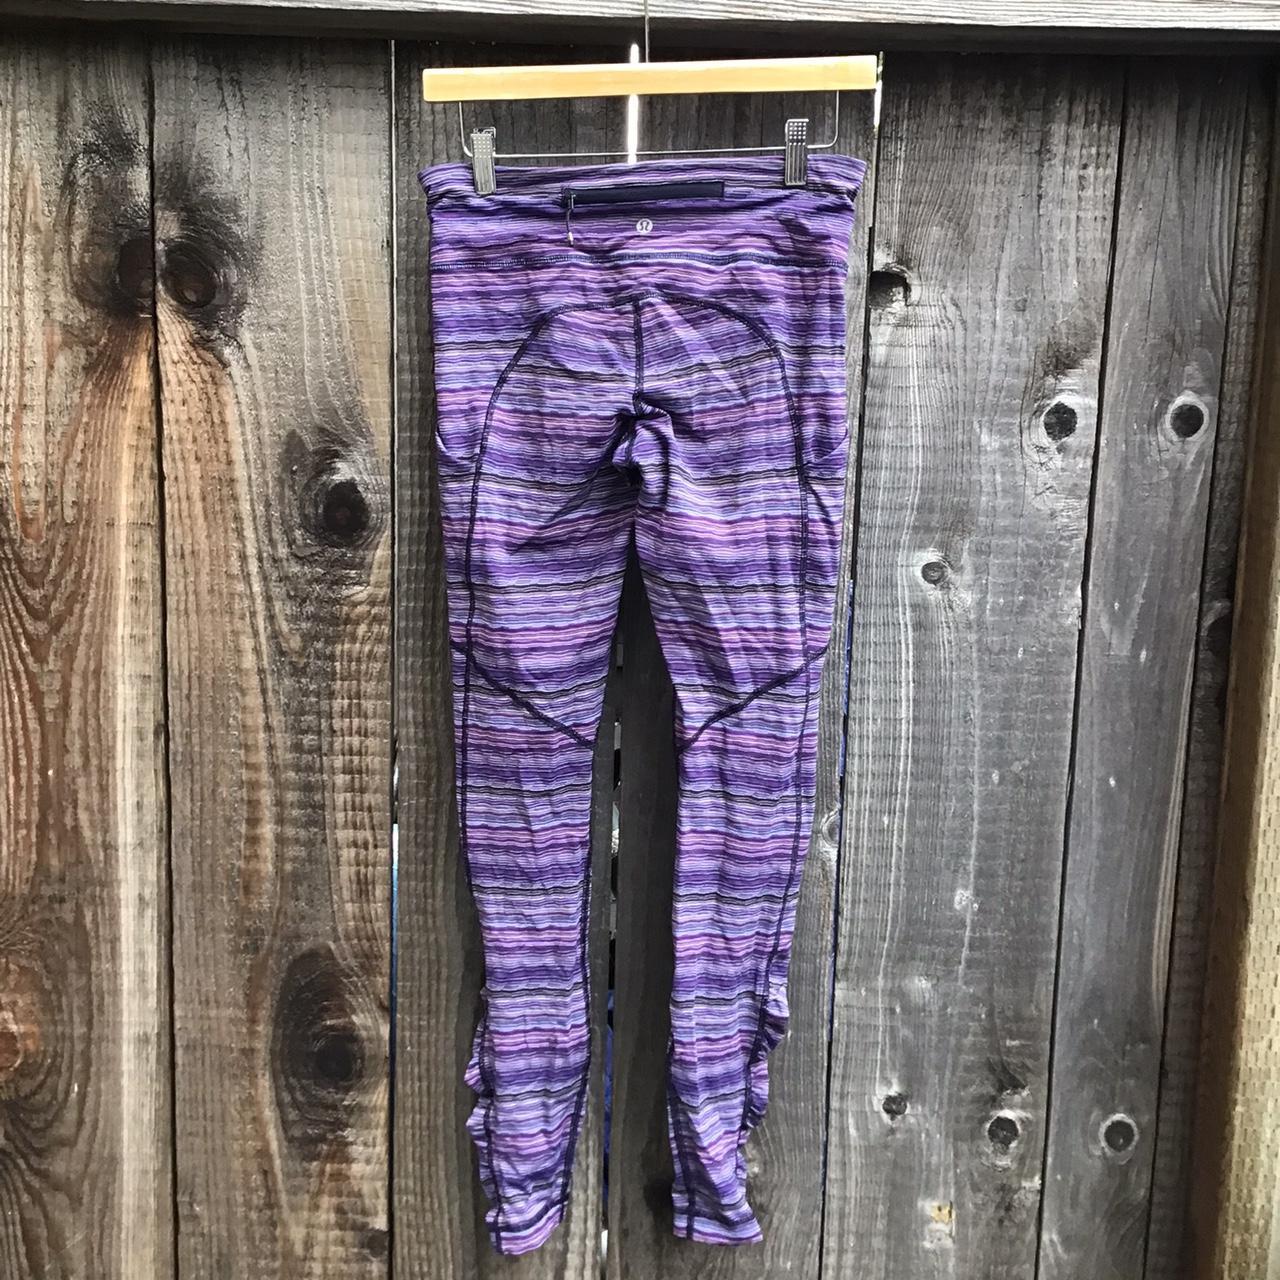 striped knit lulu lemon leggings, purple and blue - Depop